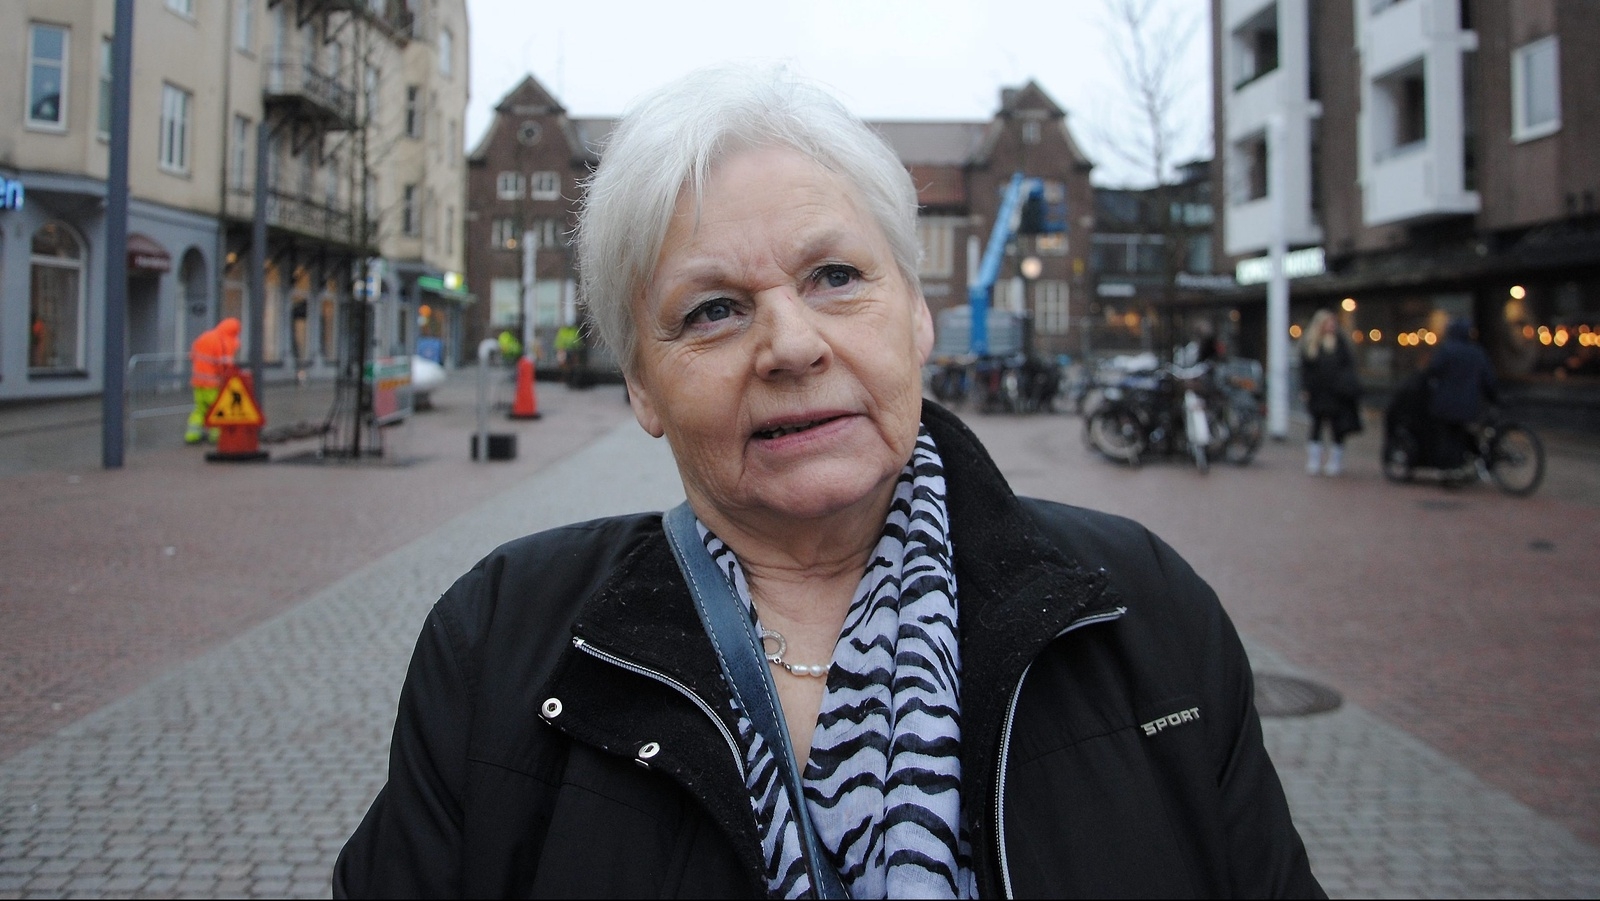 Anita Johannesson i Kommunens röst har motionerat för att Hässleholms kommun ska köpa in mer svenskt kött.
Foto: Carl-Johan Bauler/arkiv